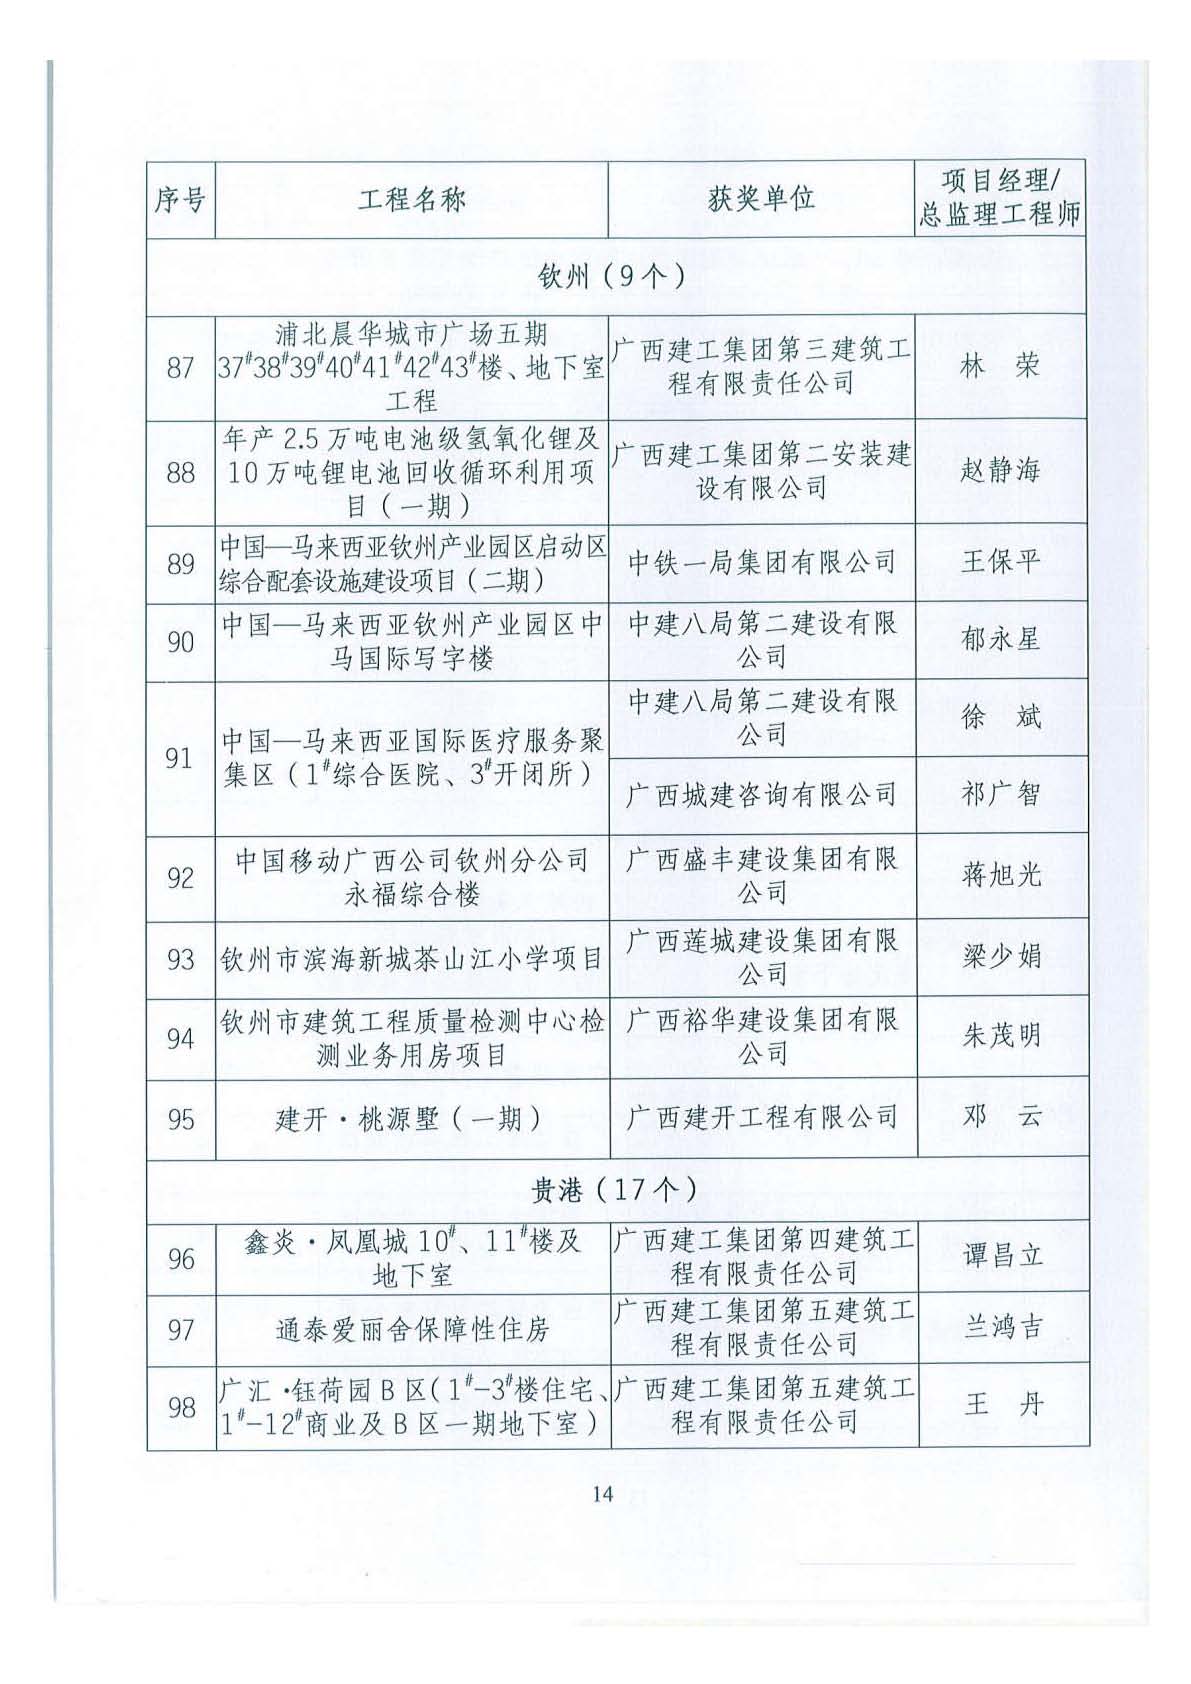 关于公布2018年下半年广西壮族自治区建设工程施工安全文明标准化工地的通知 _页面_14.jpg